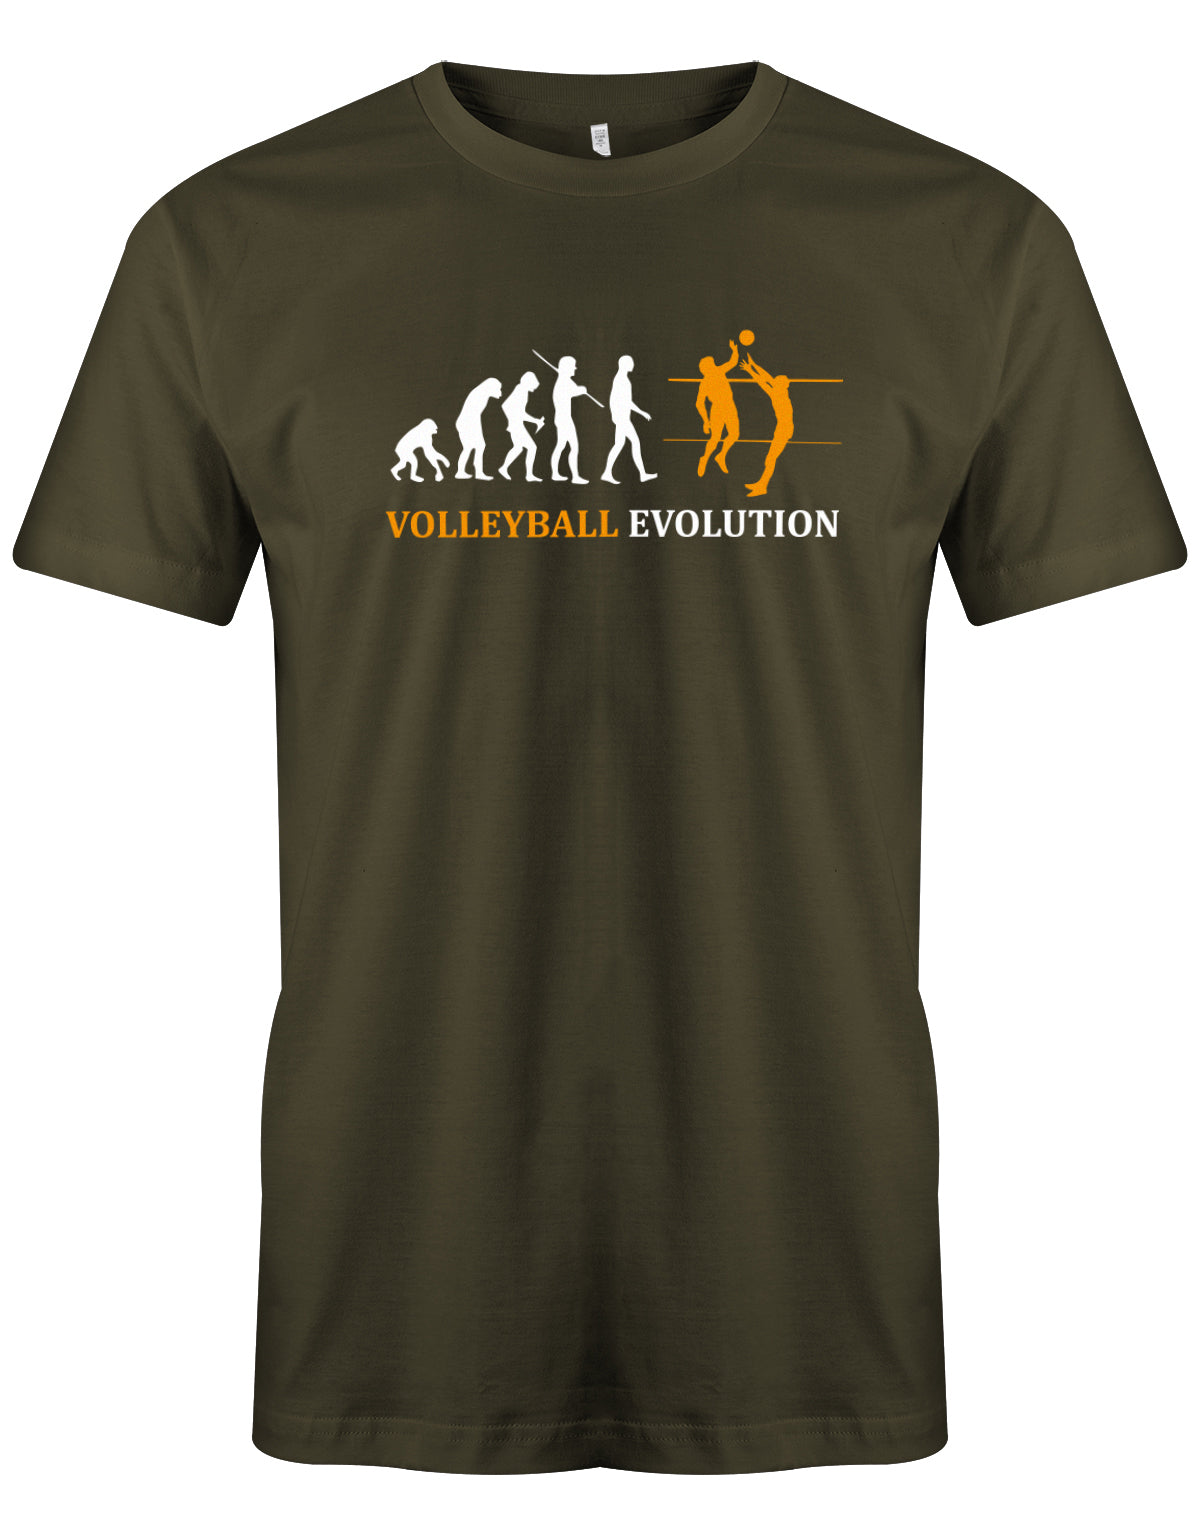 volleyball-evolution-herren-shirt-army